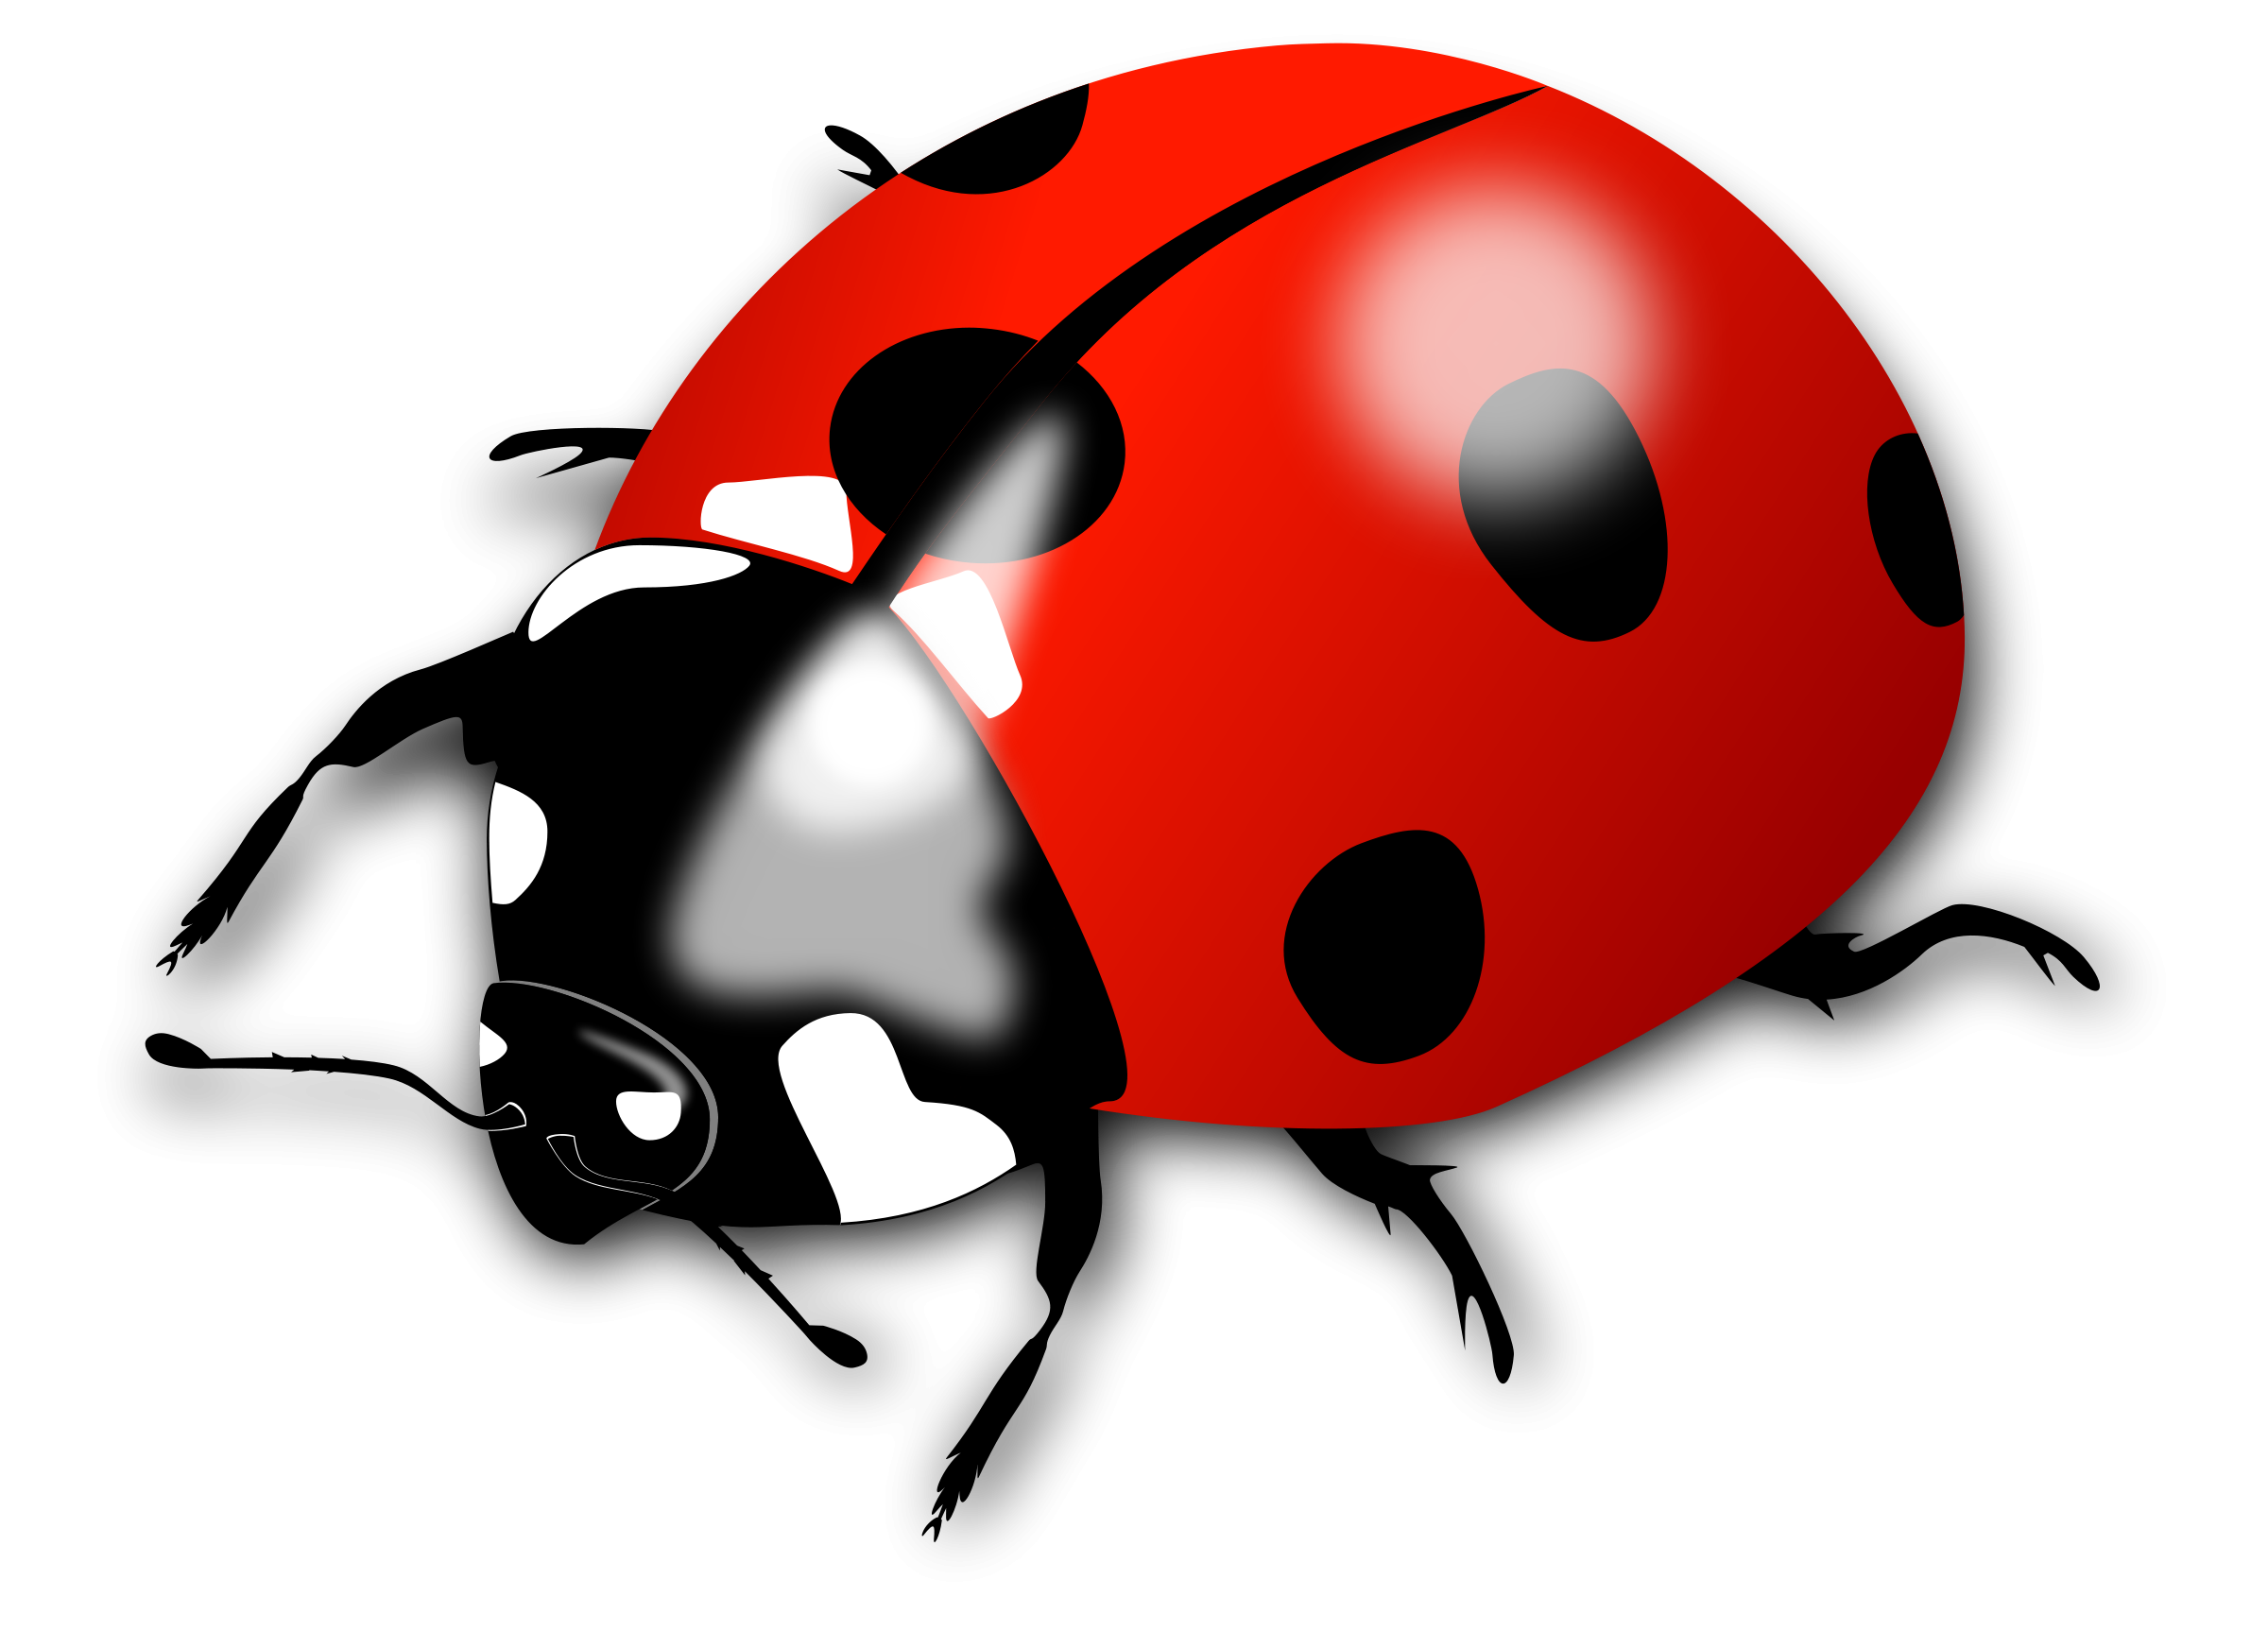 Ladybug насекомое прозрачное изображение